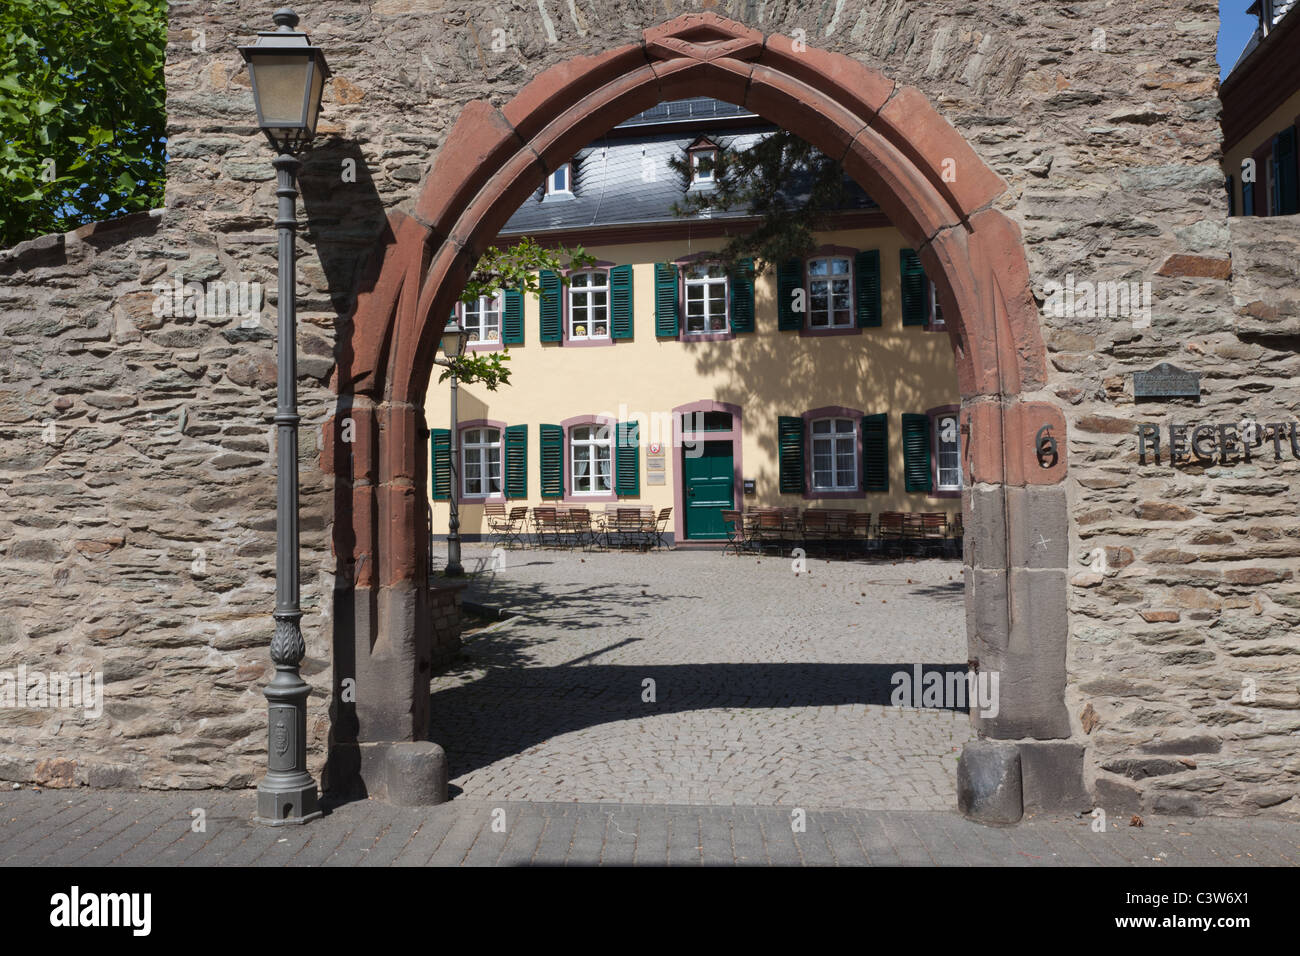 Historische Architektur in Kronberg, Deutschland, eine Stadt im Speckgürtel Frankfurts. Stockfoto